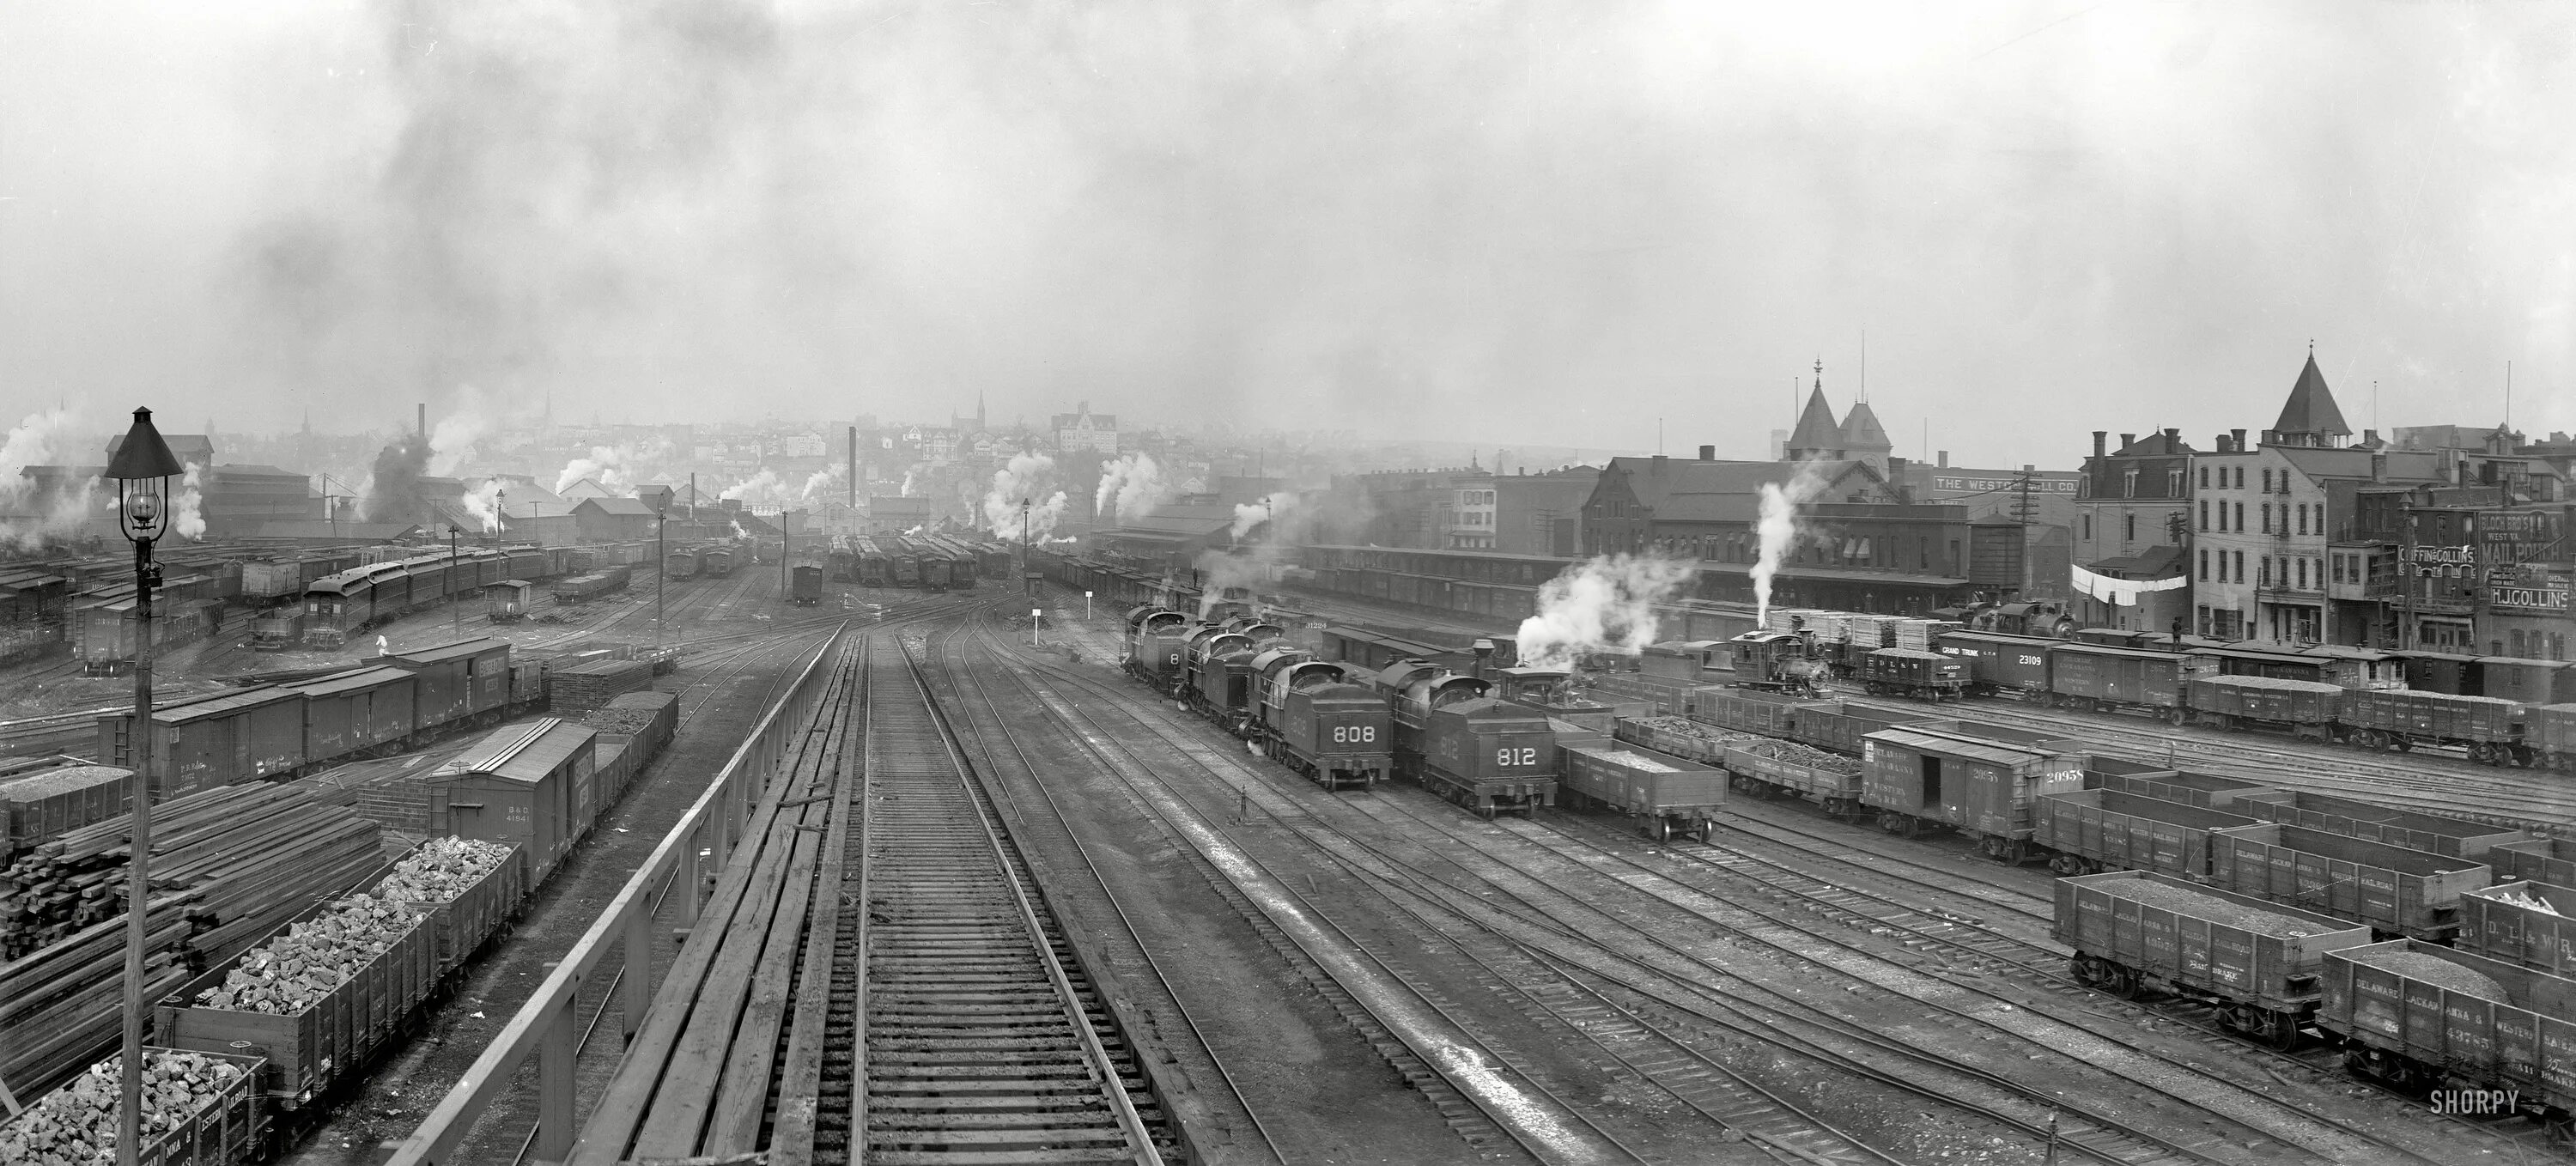 В начале 1870 годов. Железные дороги США 1900. ЖД США 19 век. Железные дороги в США 1870. Железнодорожная станция Америка 19 век вокзал.